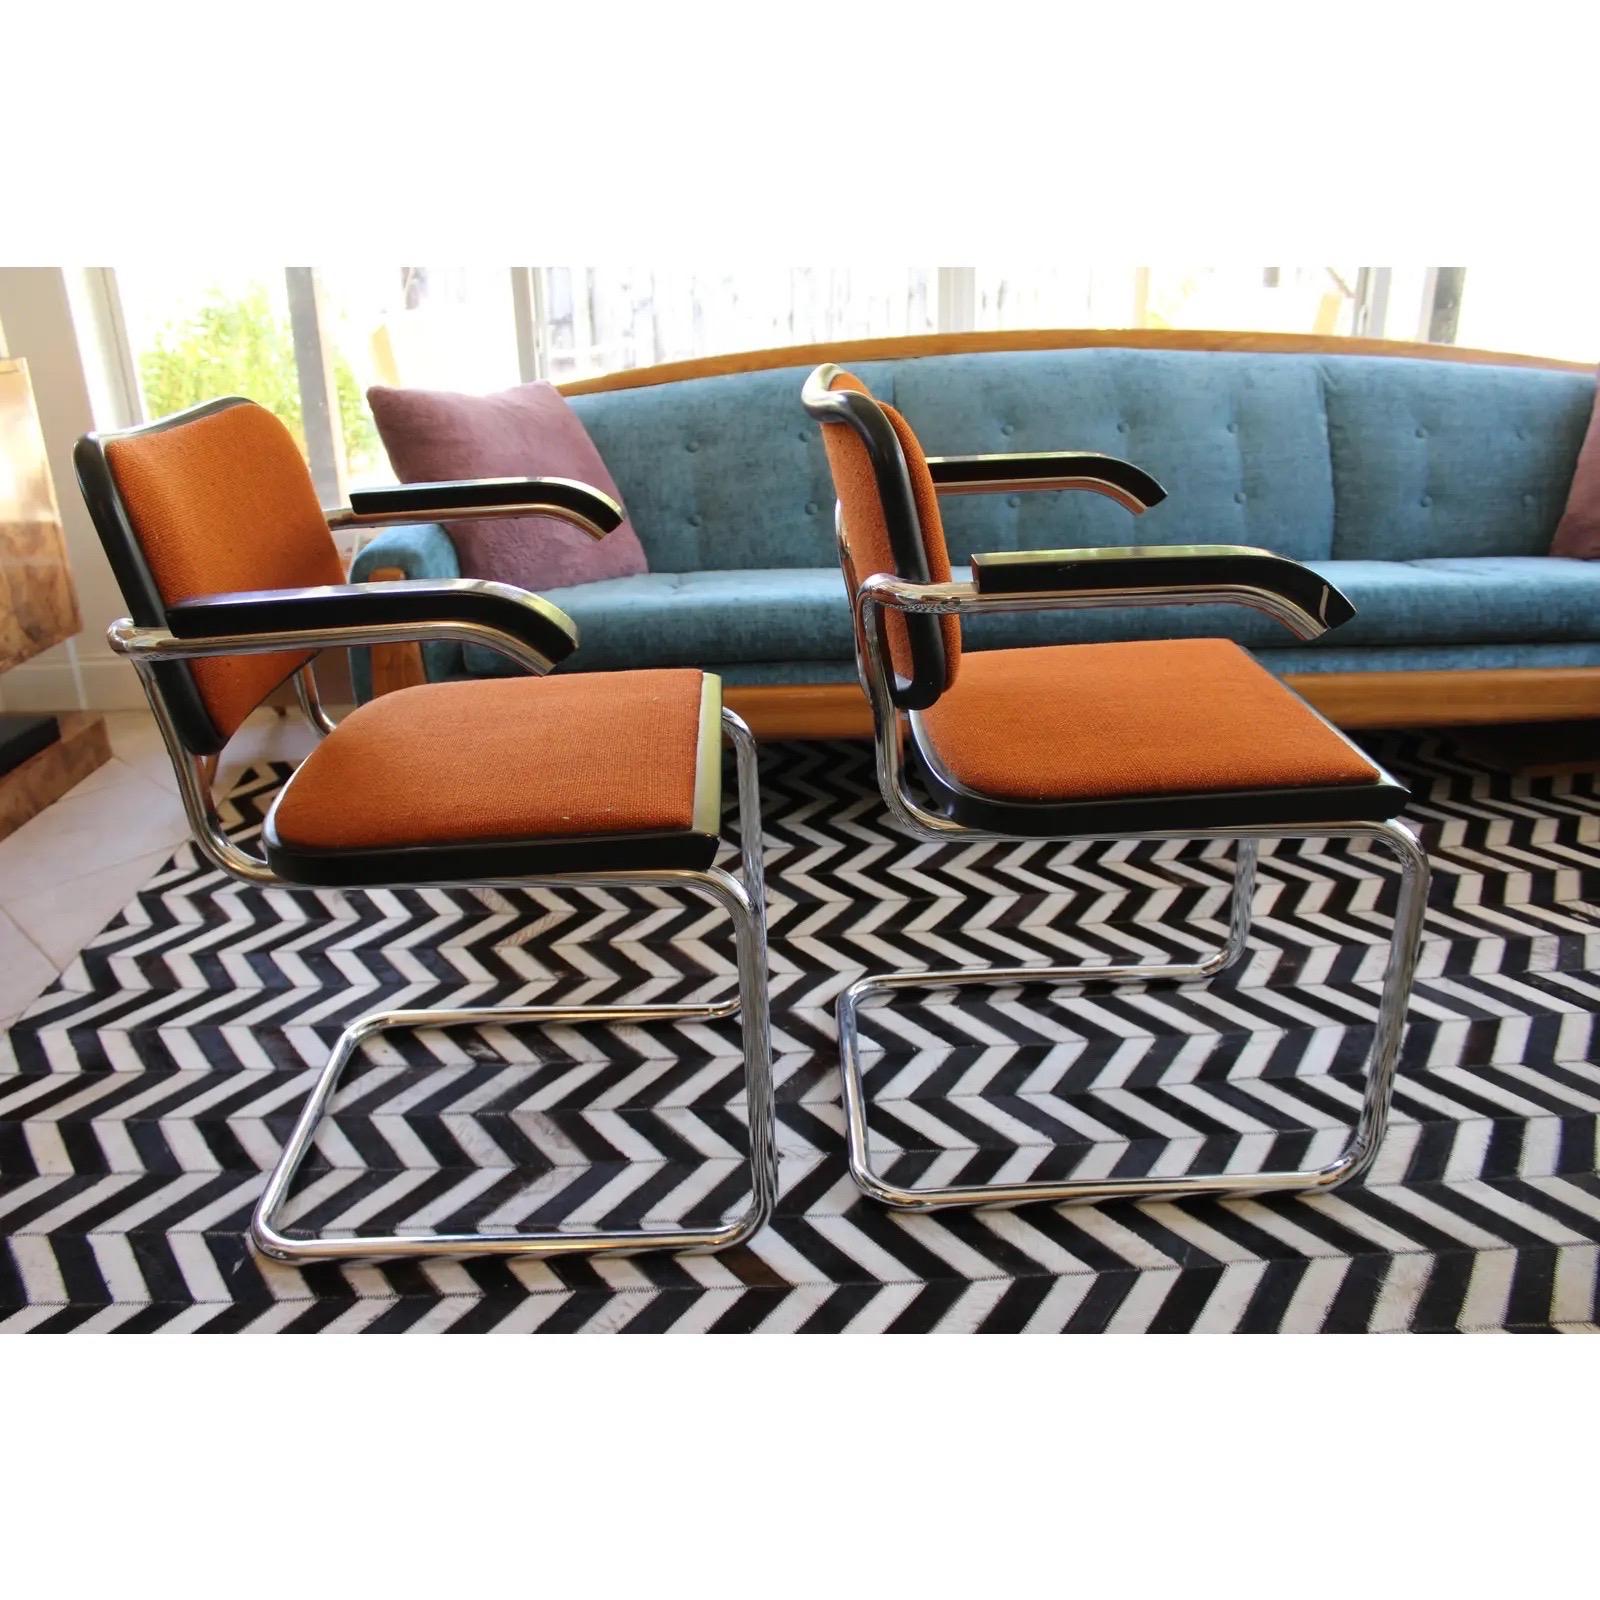 Verleihen Sie Ihrem Zuhause oder Büro einen Hauch von Raffinesse mit diesen authentischen KNOLL Marcel Breuer CESCA Modern Sesseln mit dem originalen Herstelleraufkleber, der unter einem der Sitze angebracht ist. Die von dem renommierten